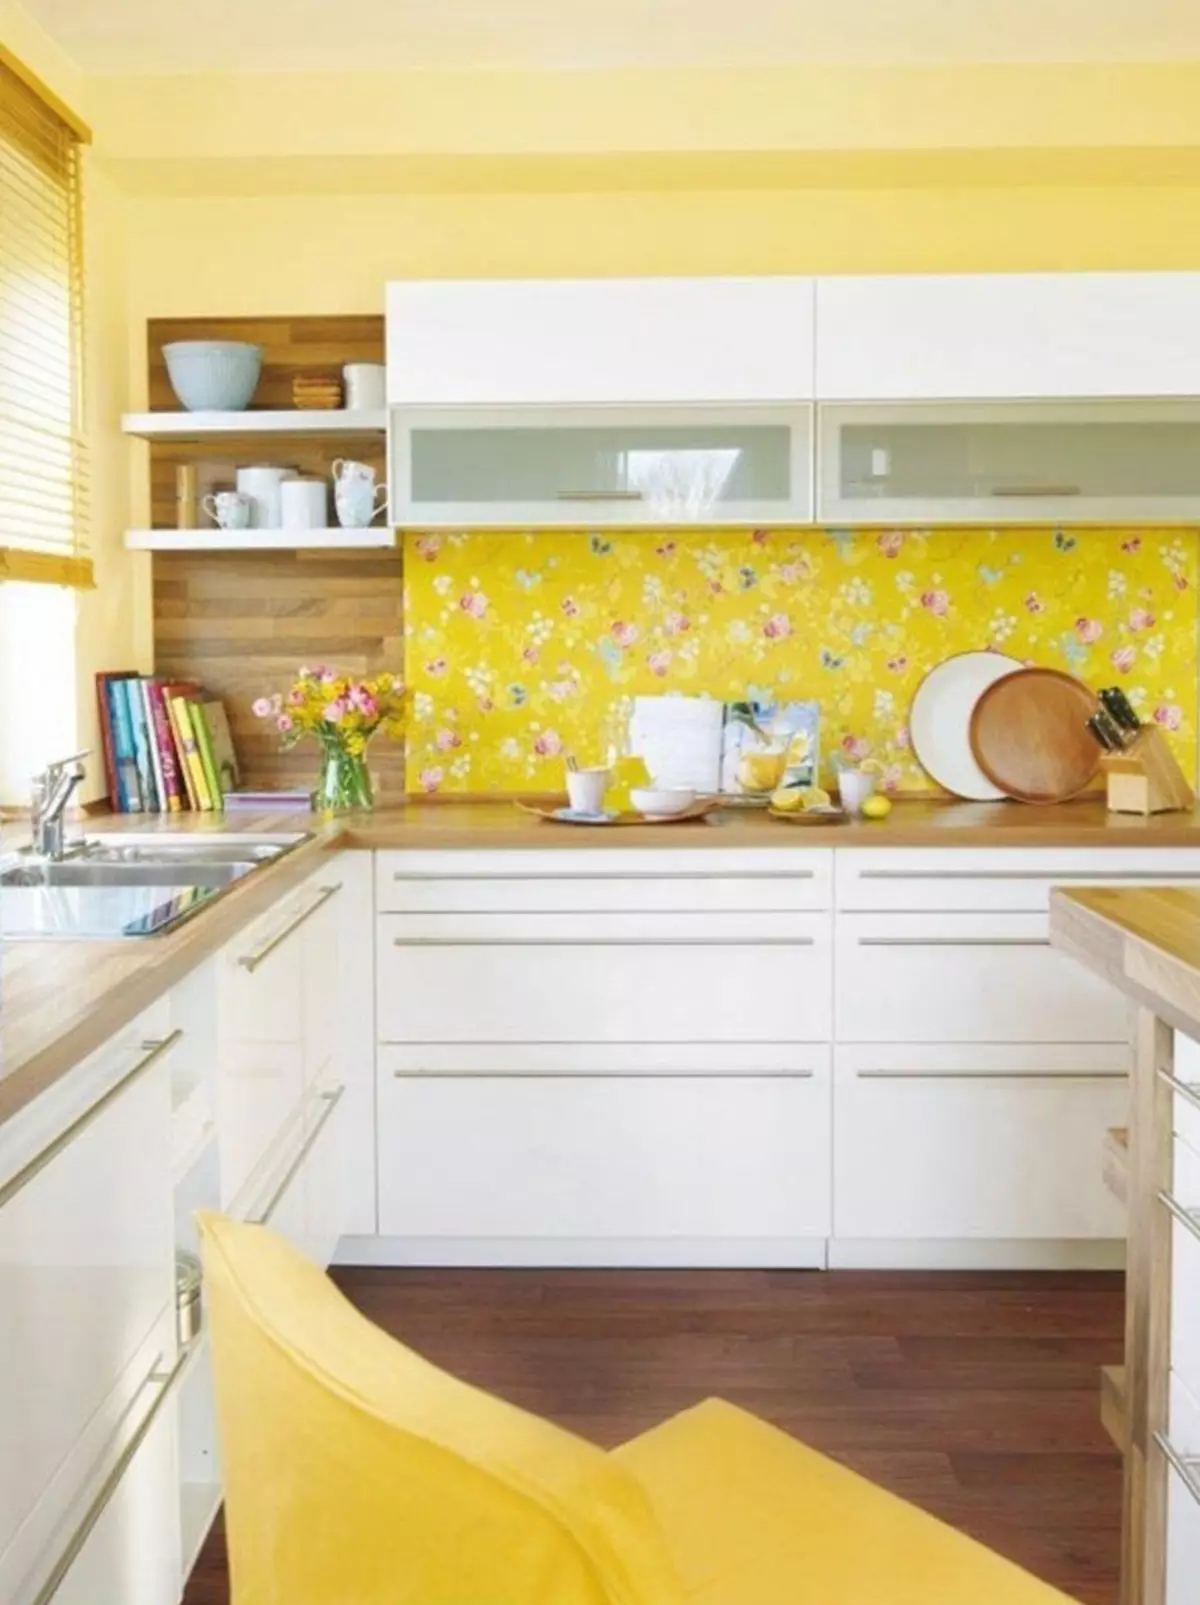 Бело желтая кухня. Кухня в желтом цвете. Кухня с желтым фартуком. Желтый цвет в интерьере кухни. Желтая кухня в интерьере.